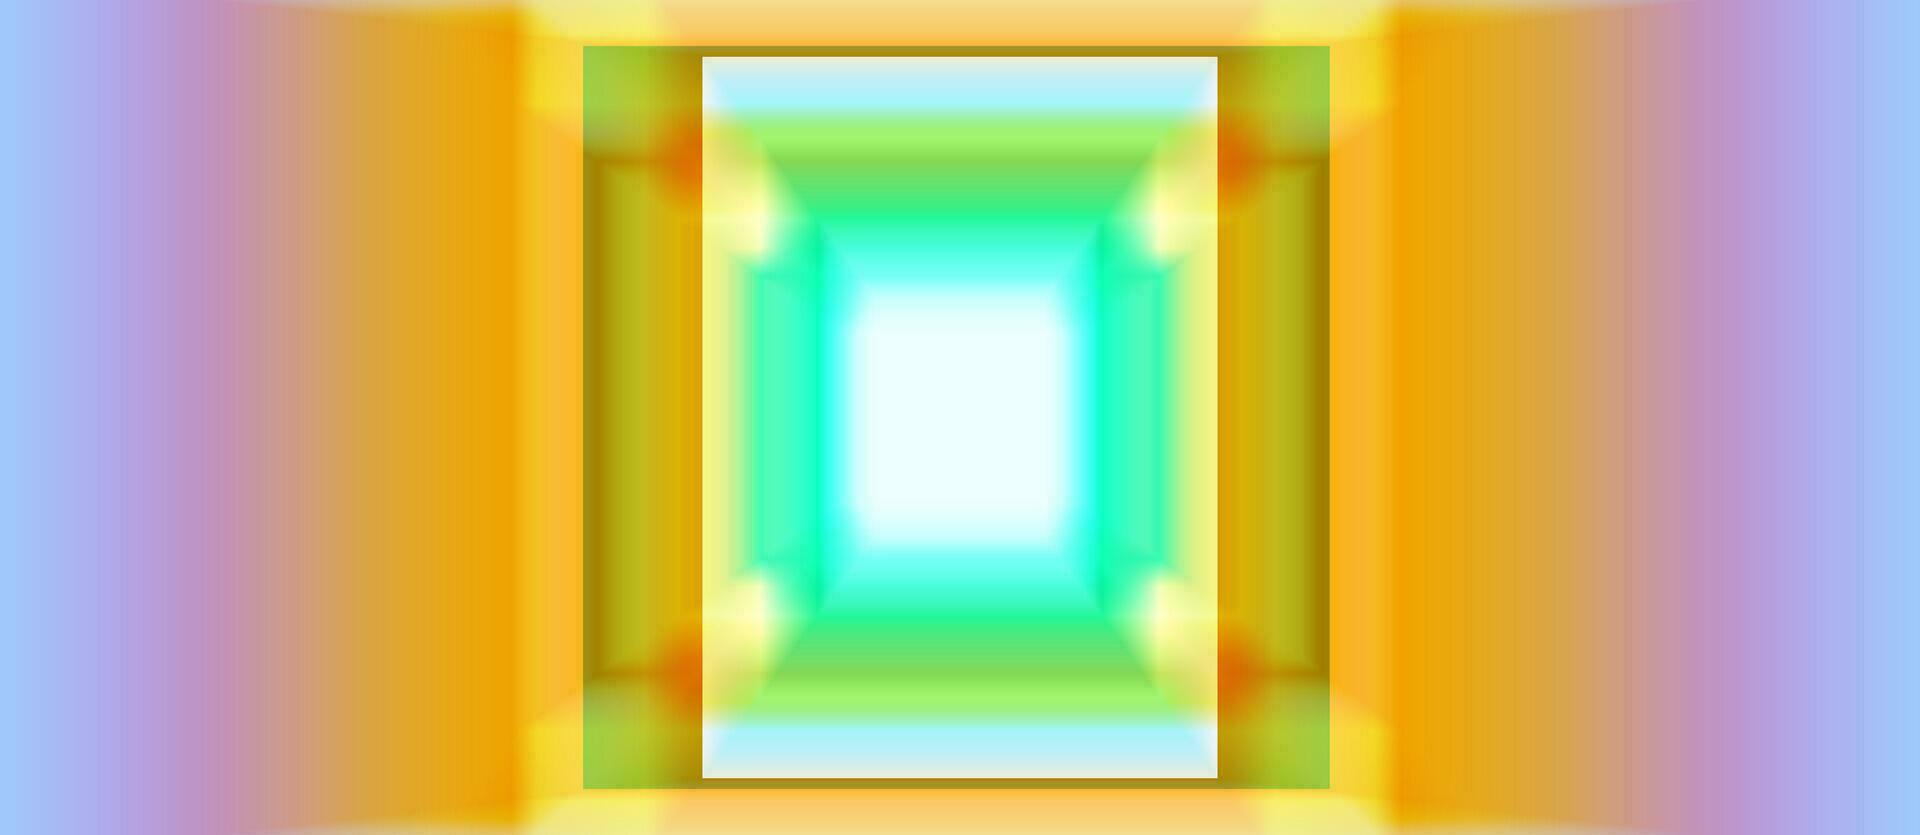 digital bakgrund. trogen ljus grön gaming baner design med abstrakt fyrkant digital begrepp. vektor illustration för företag företags- befordran, tapet, spel rubrik social media